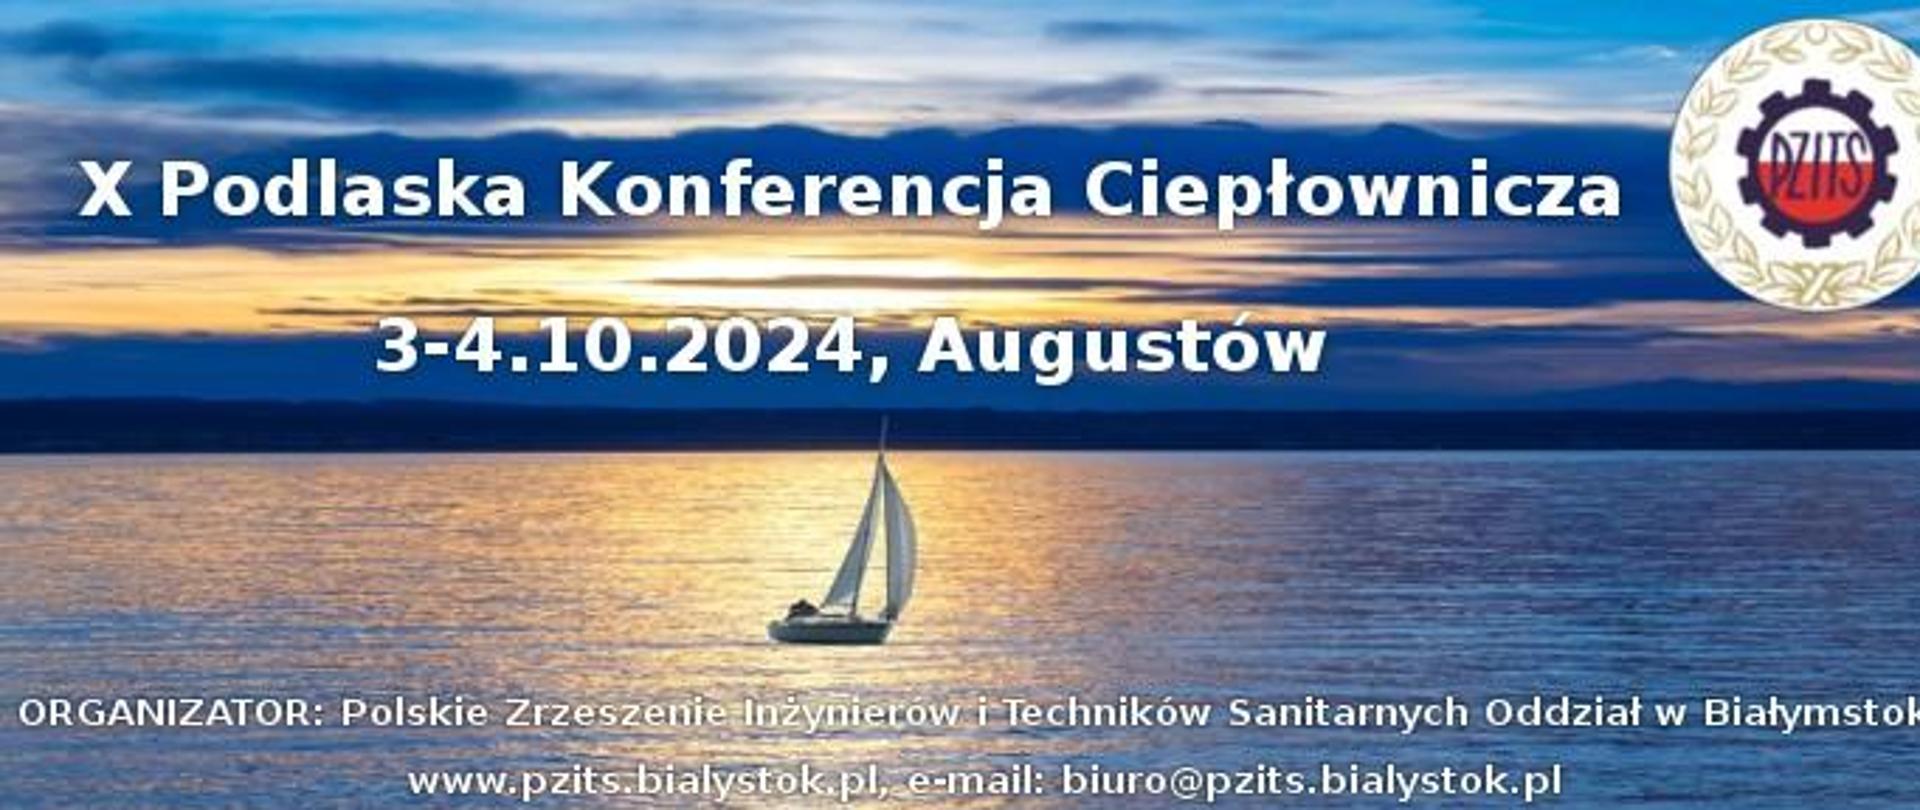 Plakat informacyjno-promocyjny oraz informacja o wydarzeniu: X Podlaska Konferencja Ciepłownicza , które odbędzie się w dniach 3-4 października 2024 w Augustowie